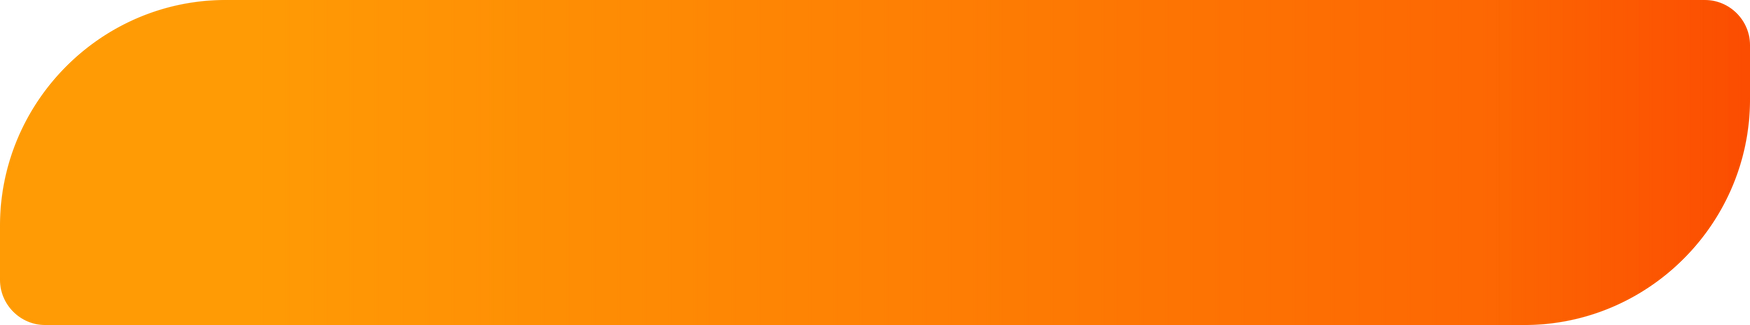 Button gradient modern orange